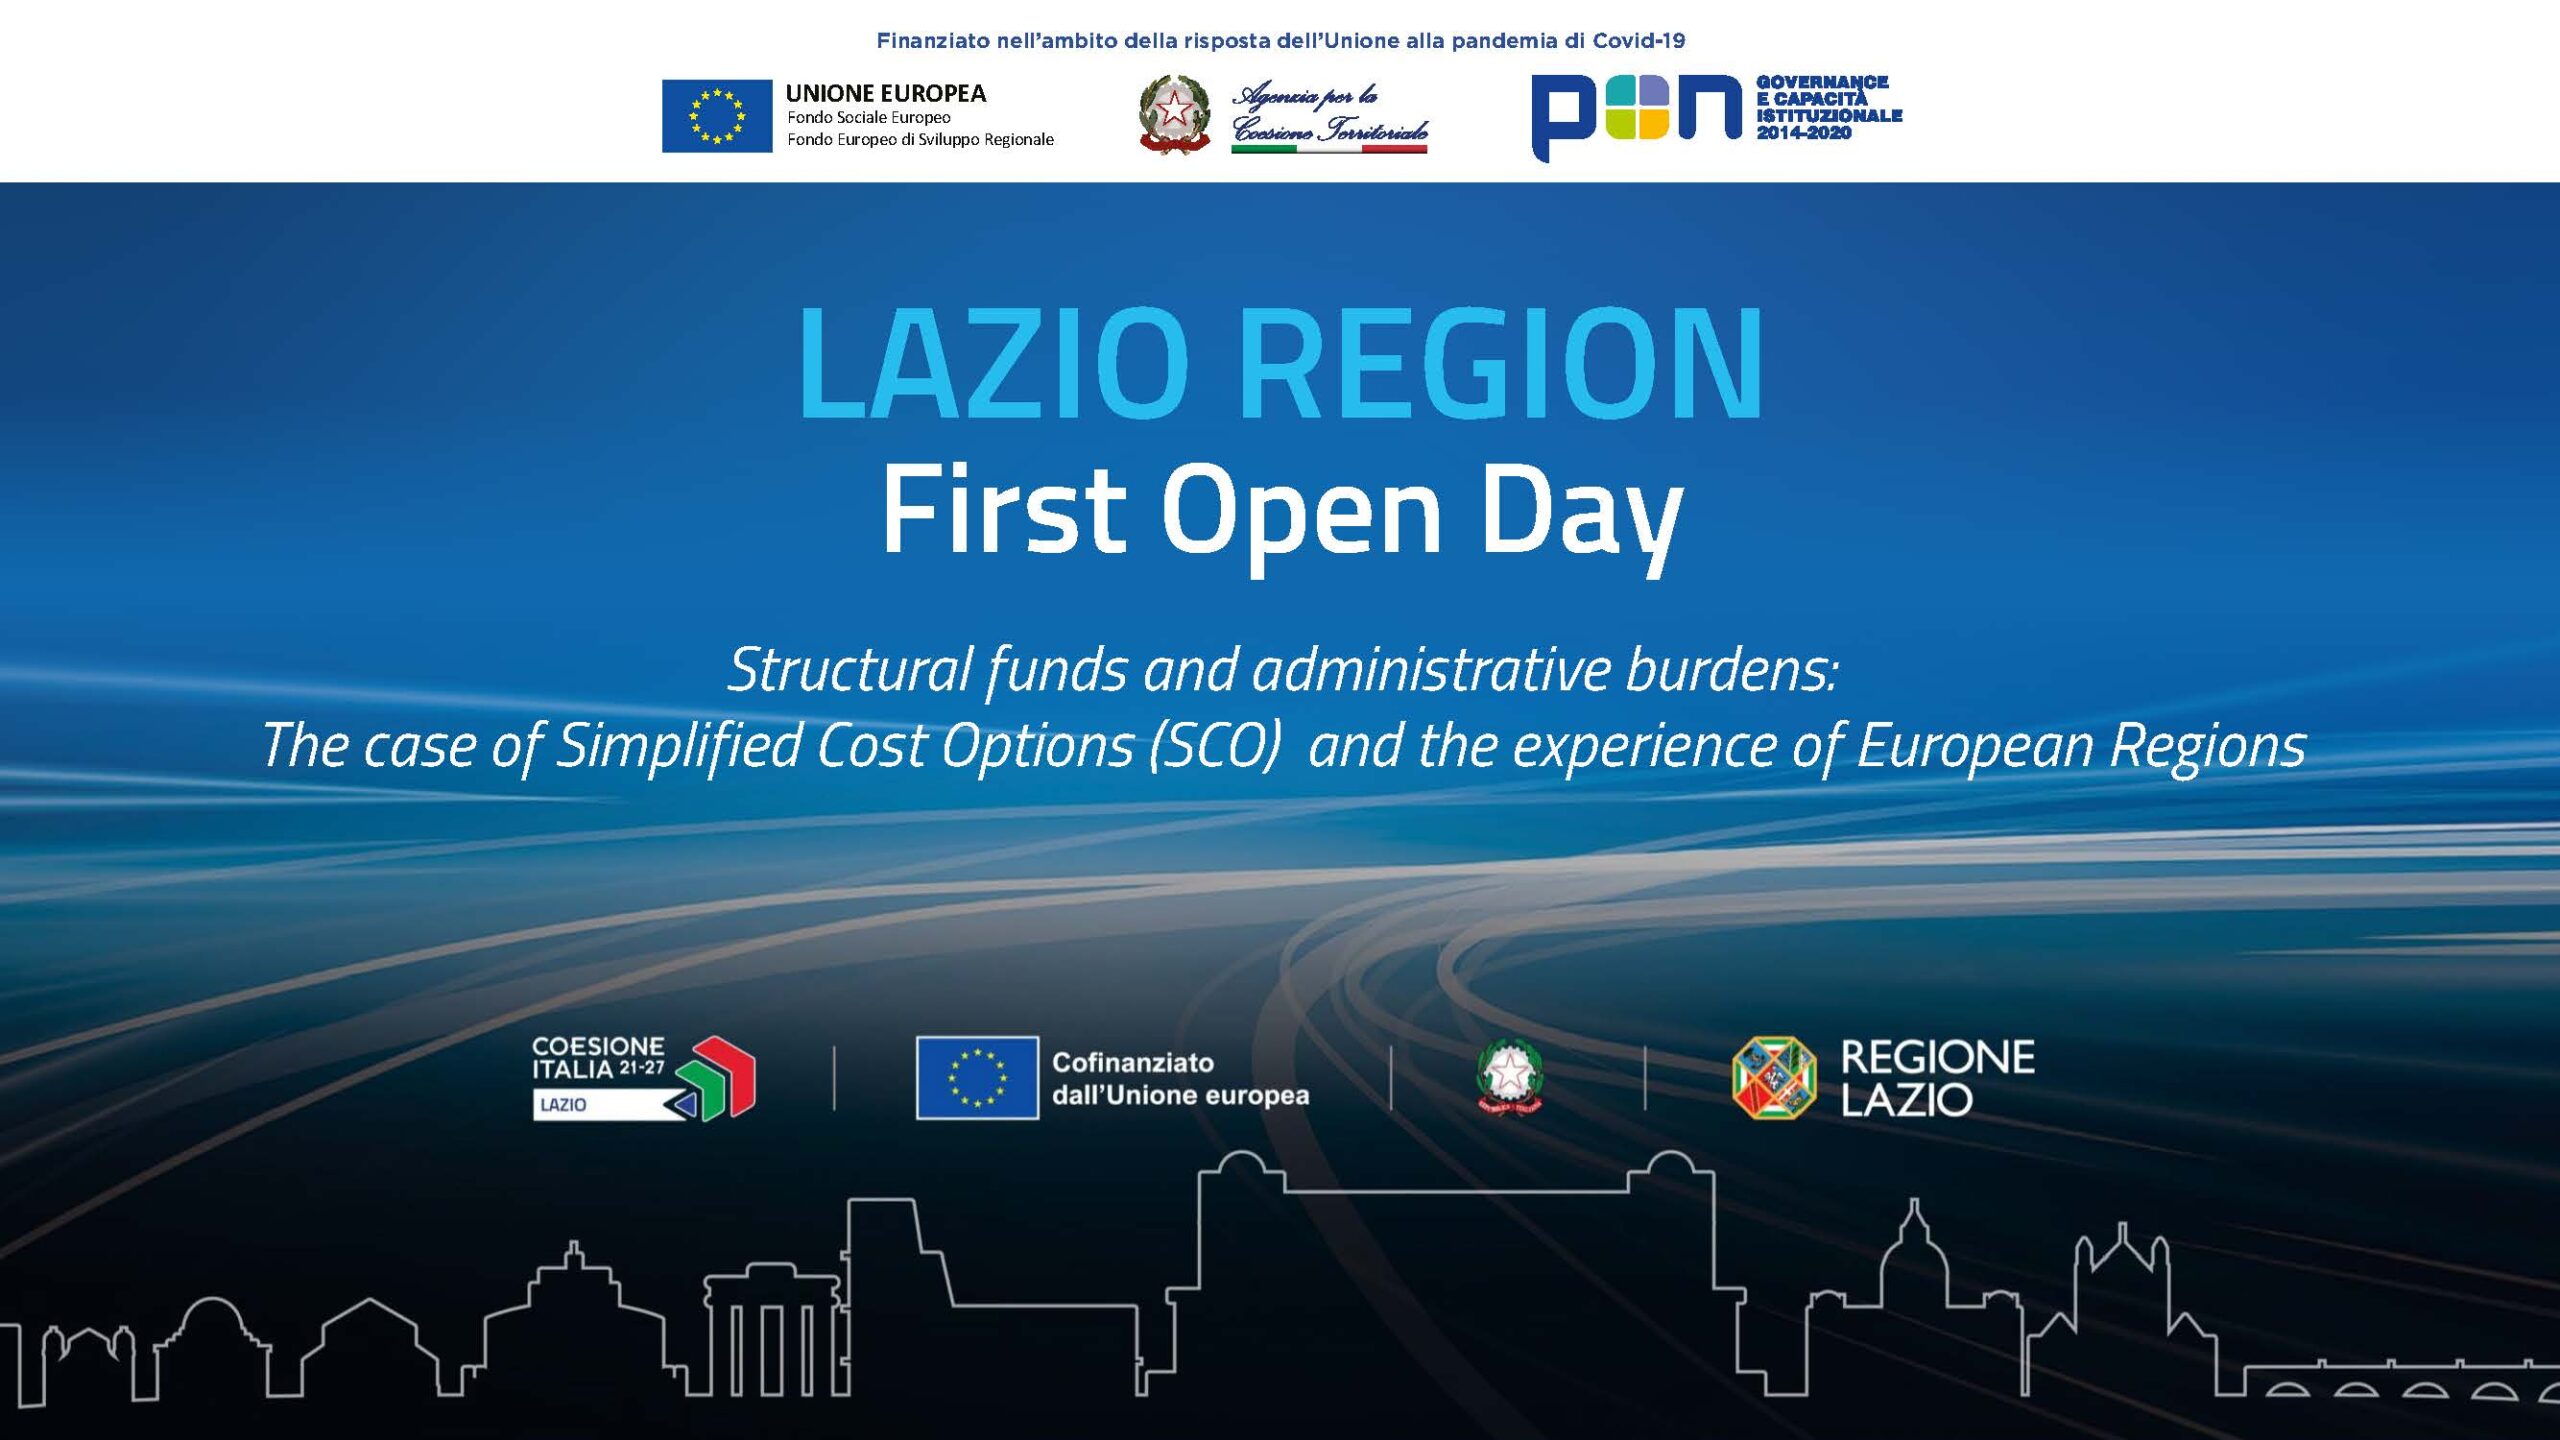 Lazio Region First Open Day (12 ottobre) - Informazioni nel testo della notizia